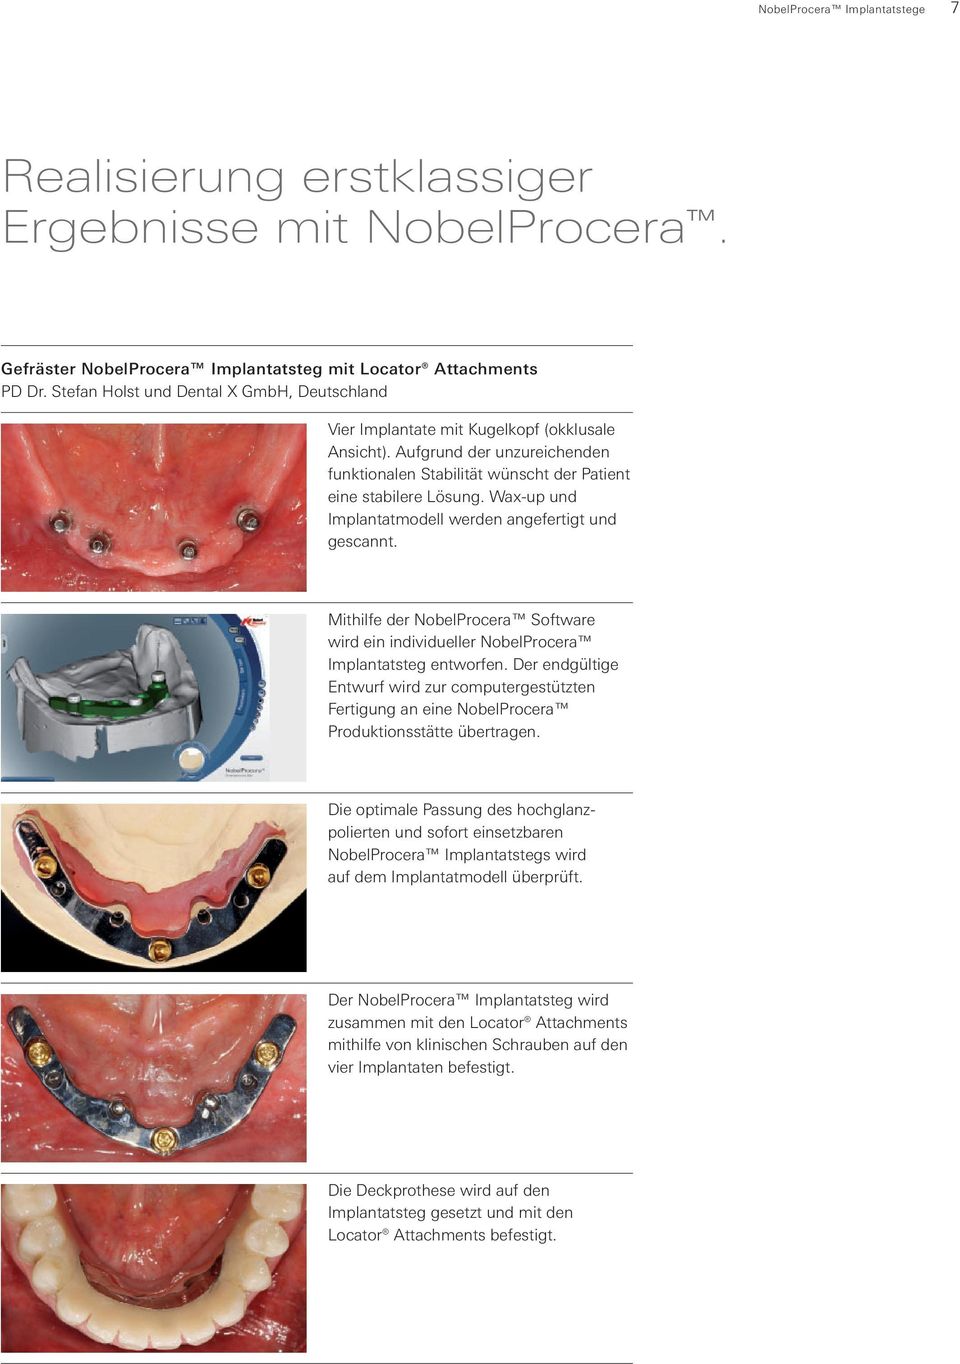 Wax-up und Implantatmodell werden angefertigt und gescannt. Mithilfe der NobelProcera Software wird ein individueller NobelProcera Implantatsteg entworfen.